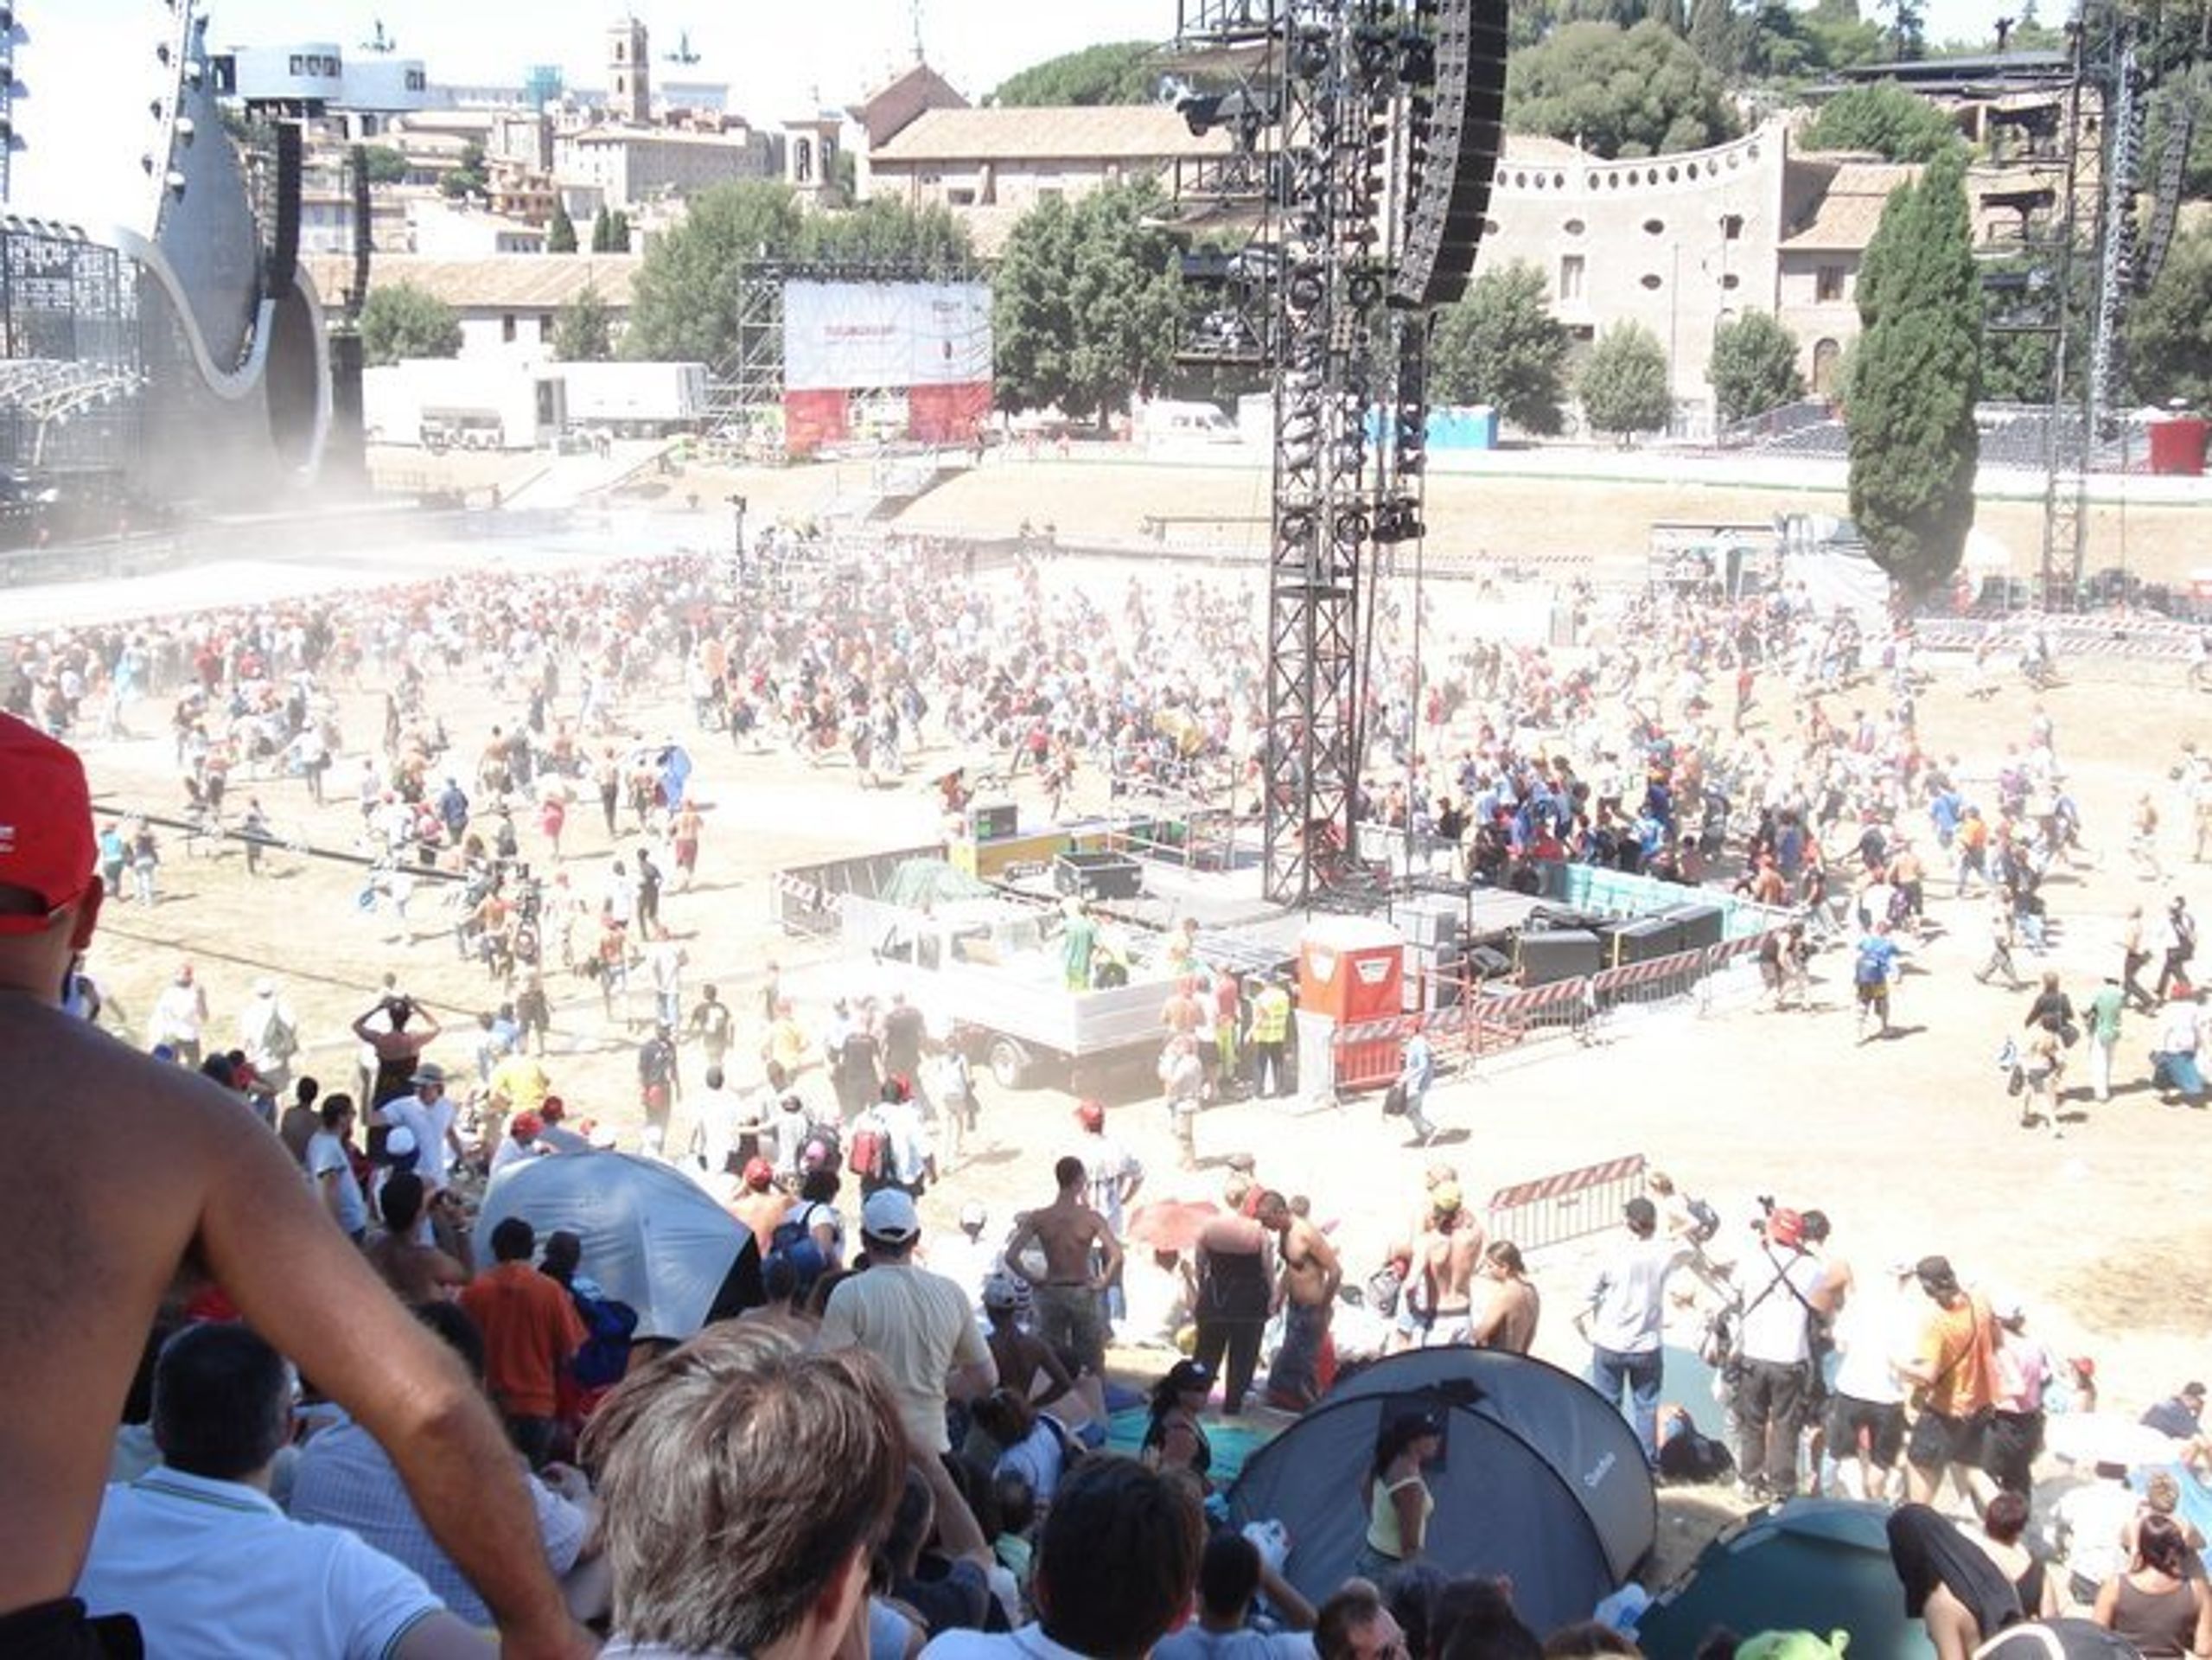 Koncert Genesis v římském Circo Massimo - úprk fanoušků ke hrazení před pódiem - OBRAZEM: Koncert Genesis v Římě pro půl milionu fanoušků (5/7)